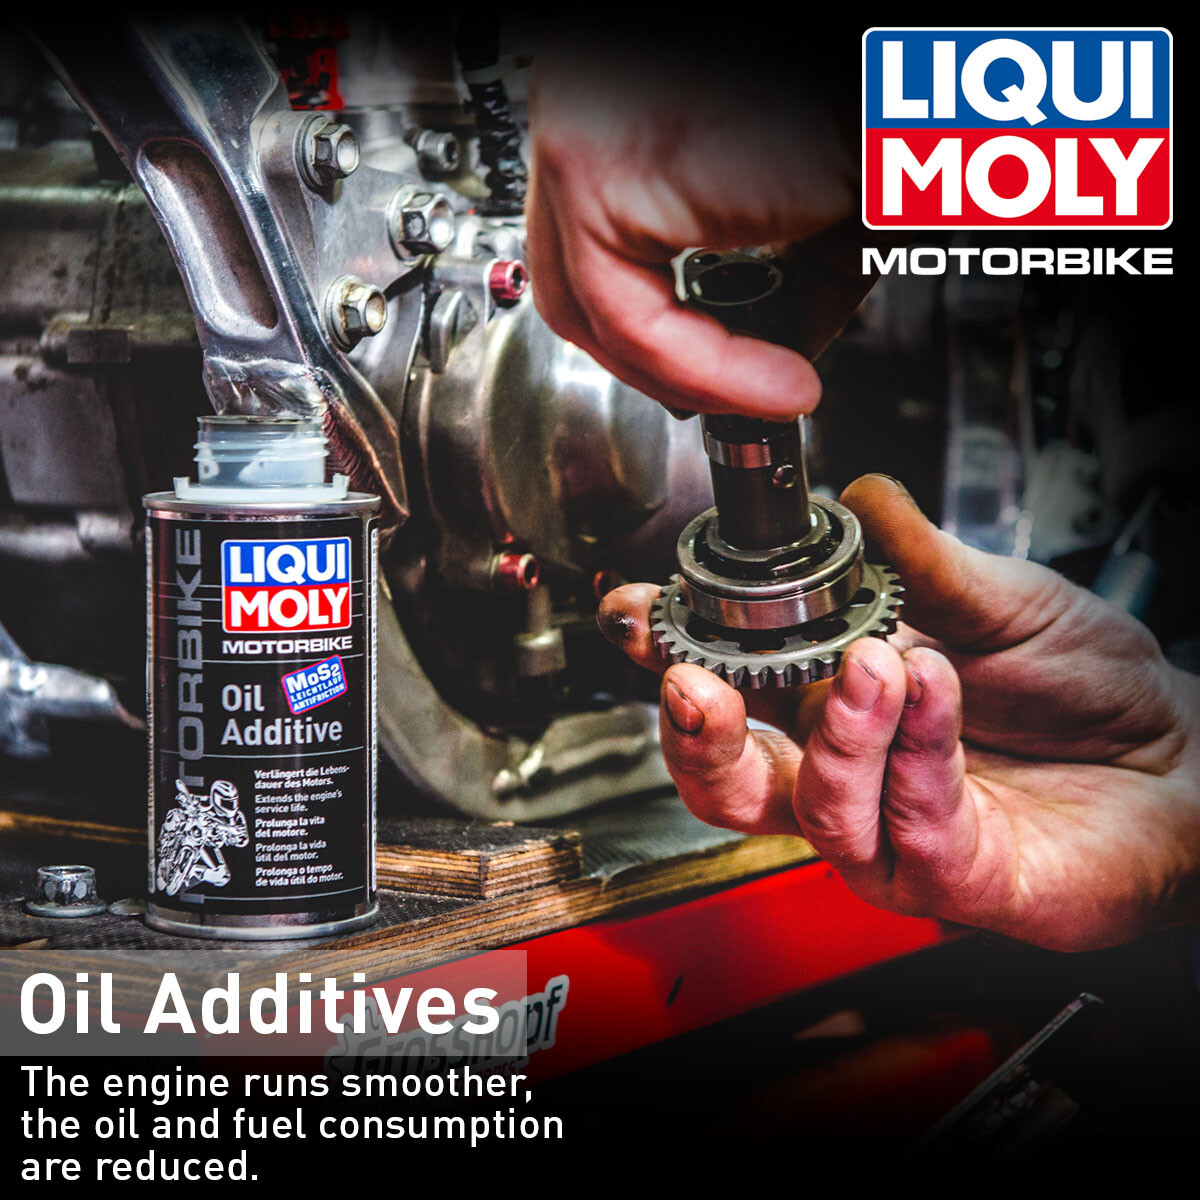 [Translate to Französich:] LIQUI MOLY Oil Additive